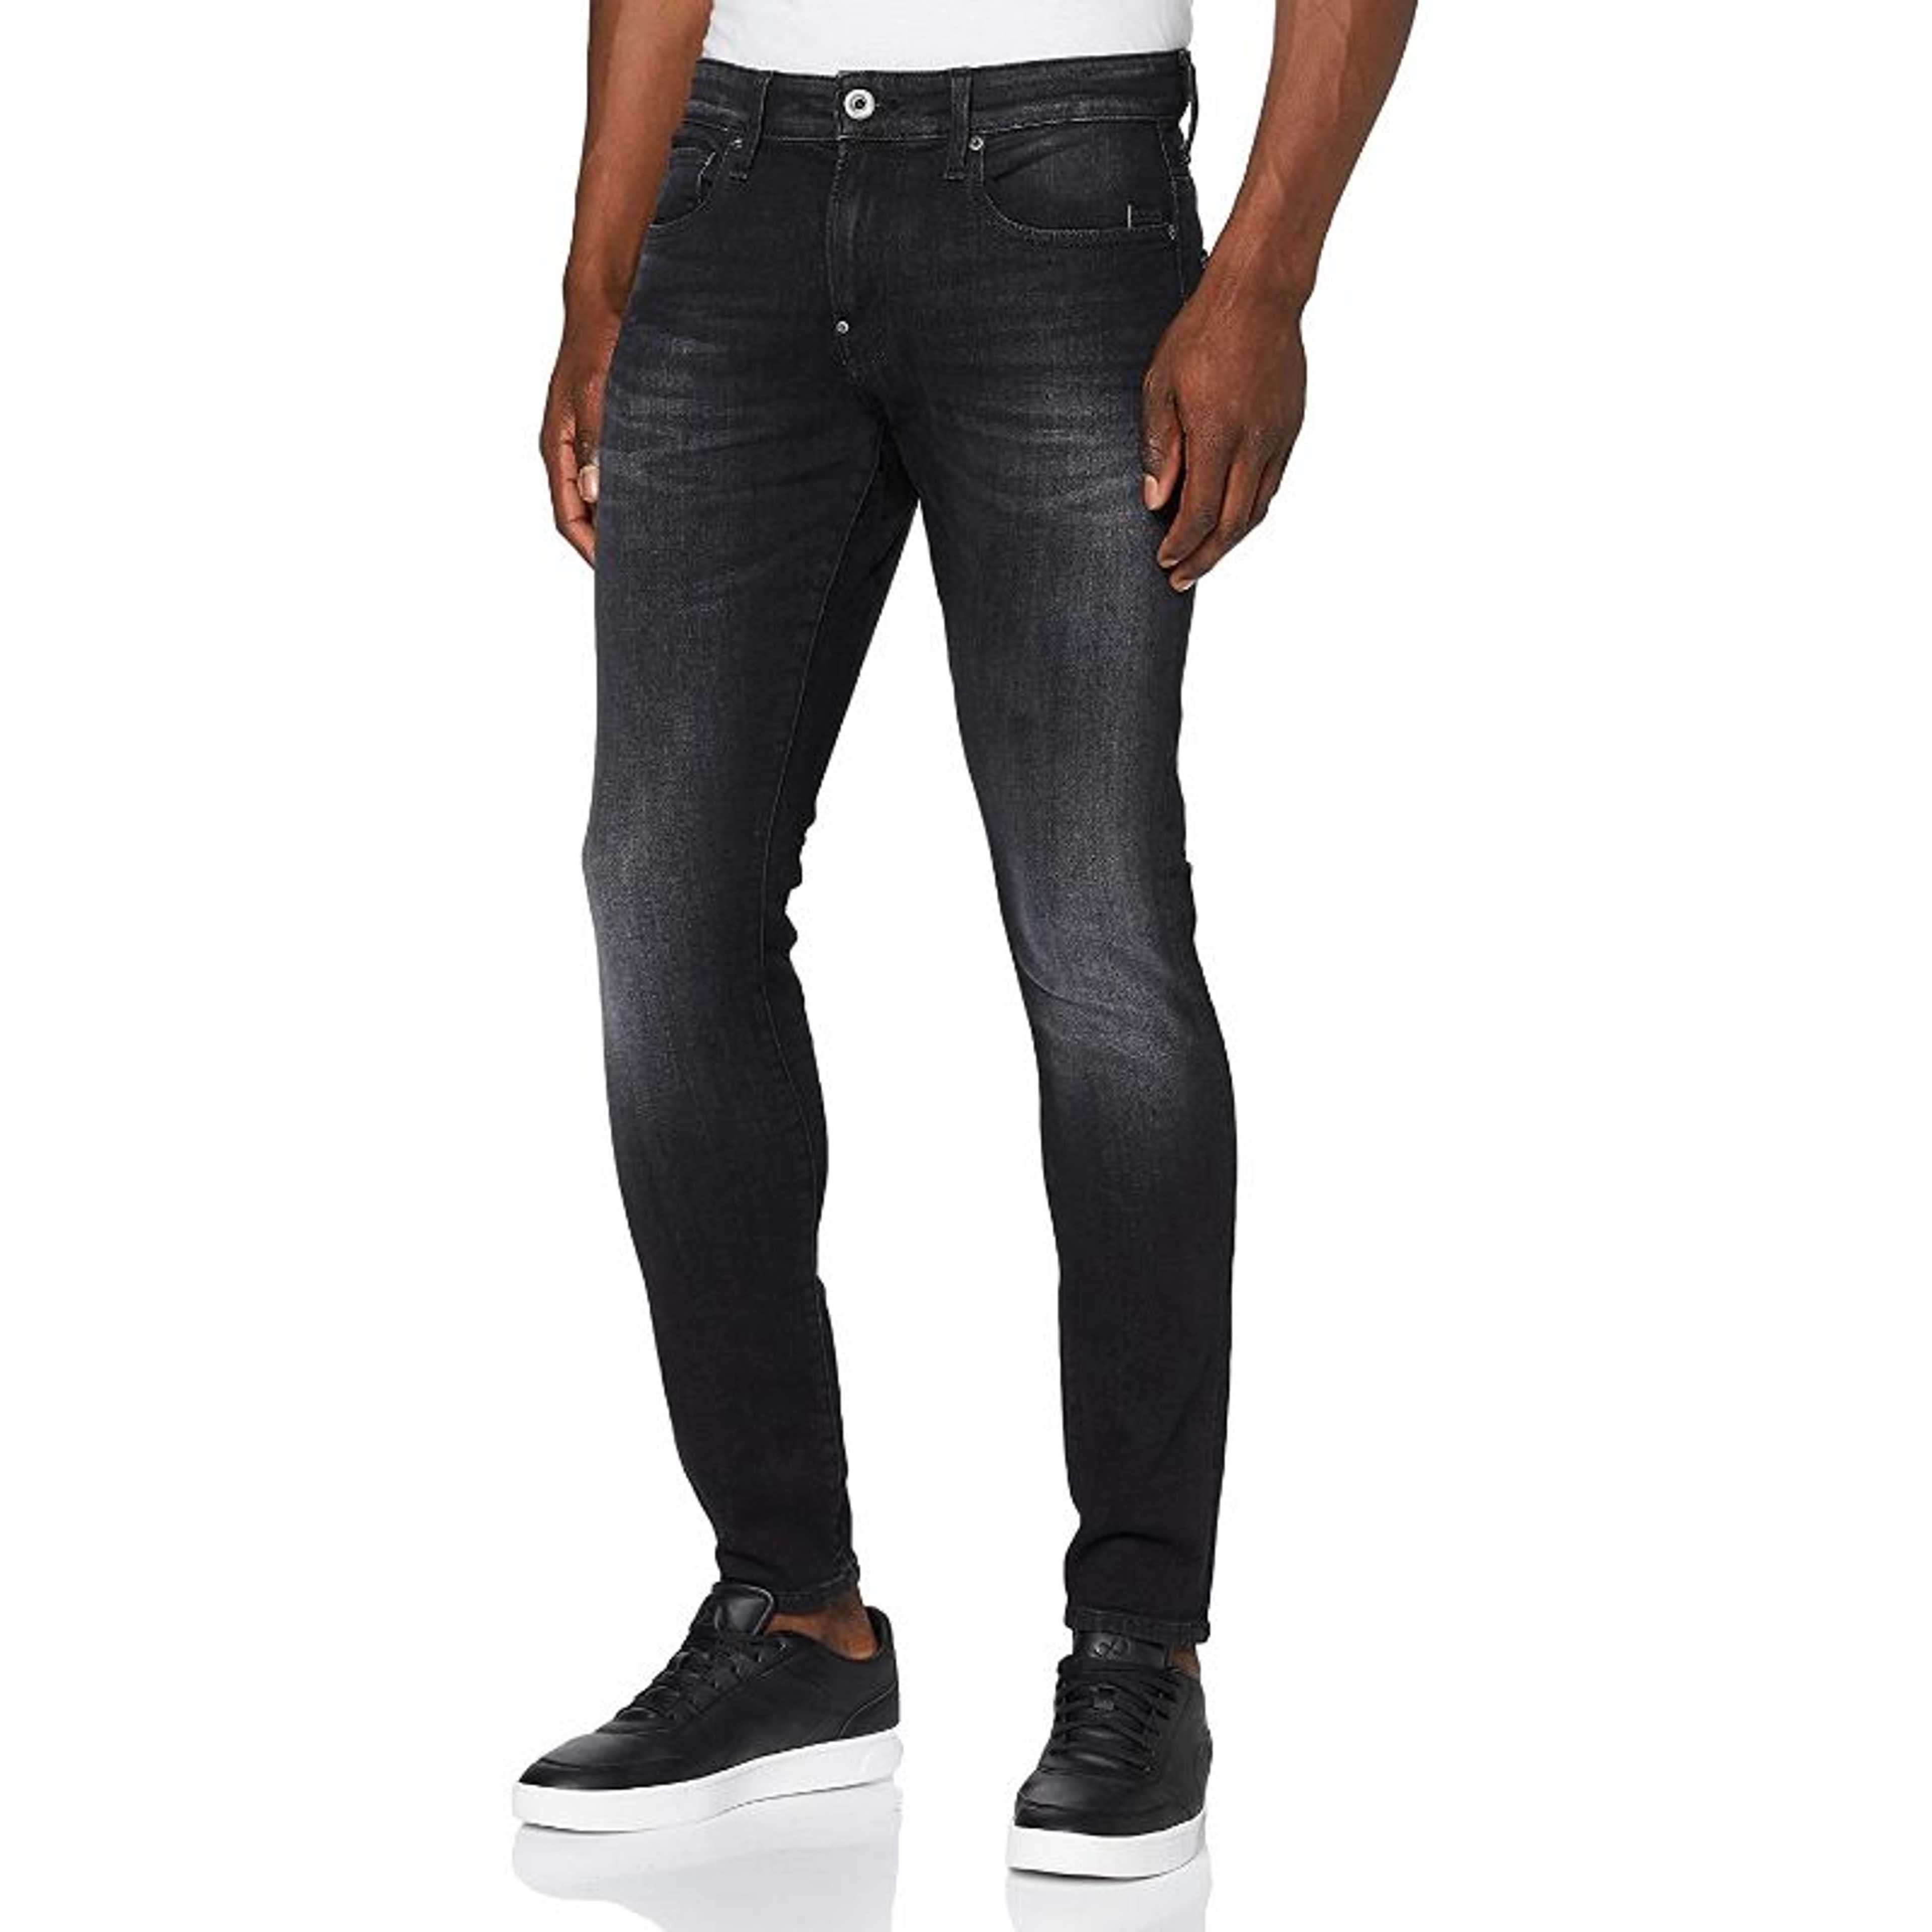 Rubahas Men’s Slim Fit Denim Jeans Pant in Black Color